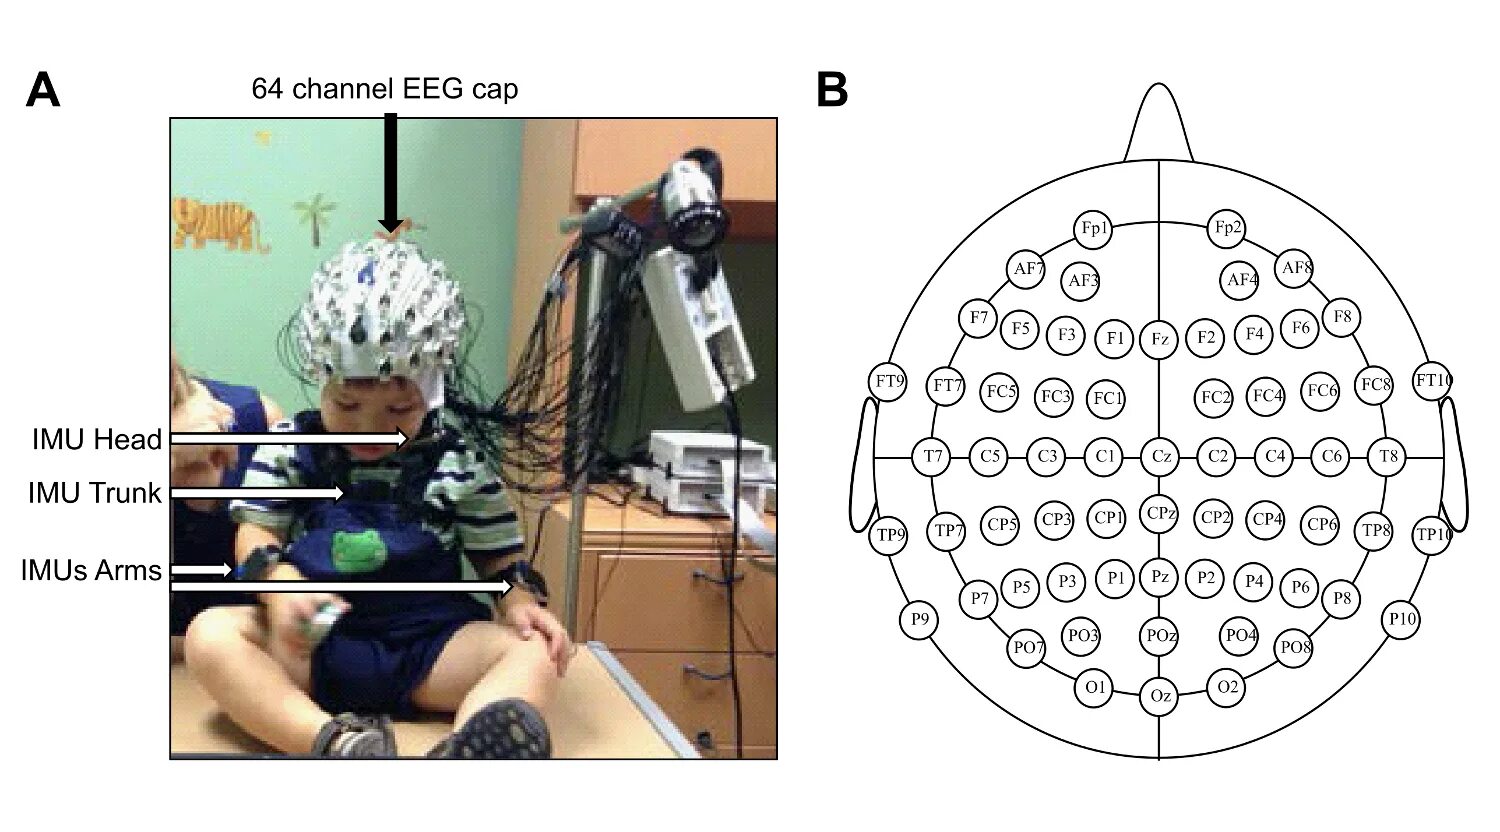 Луки ээг. Расположение электродов ЭЭГ. ЭЭГ мониторинг головного мозга. ЭЭГ шапочка схема. Электроэнцефалография головного мозга (ЭЭГ).